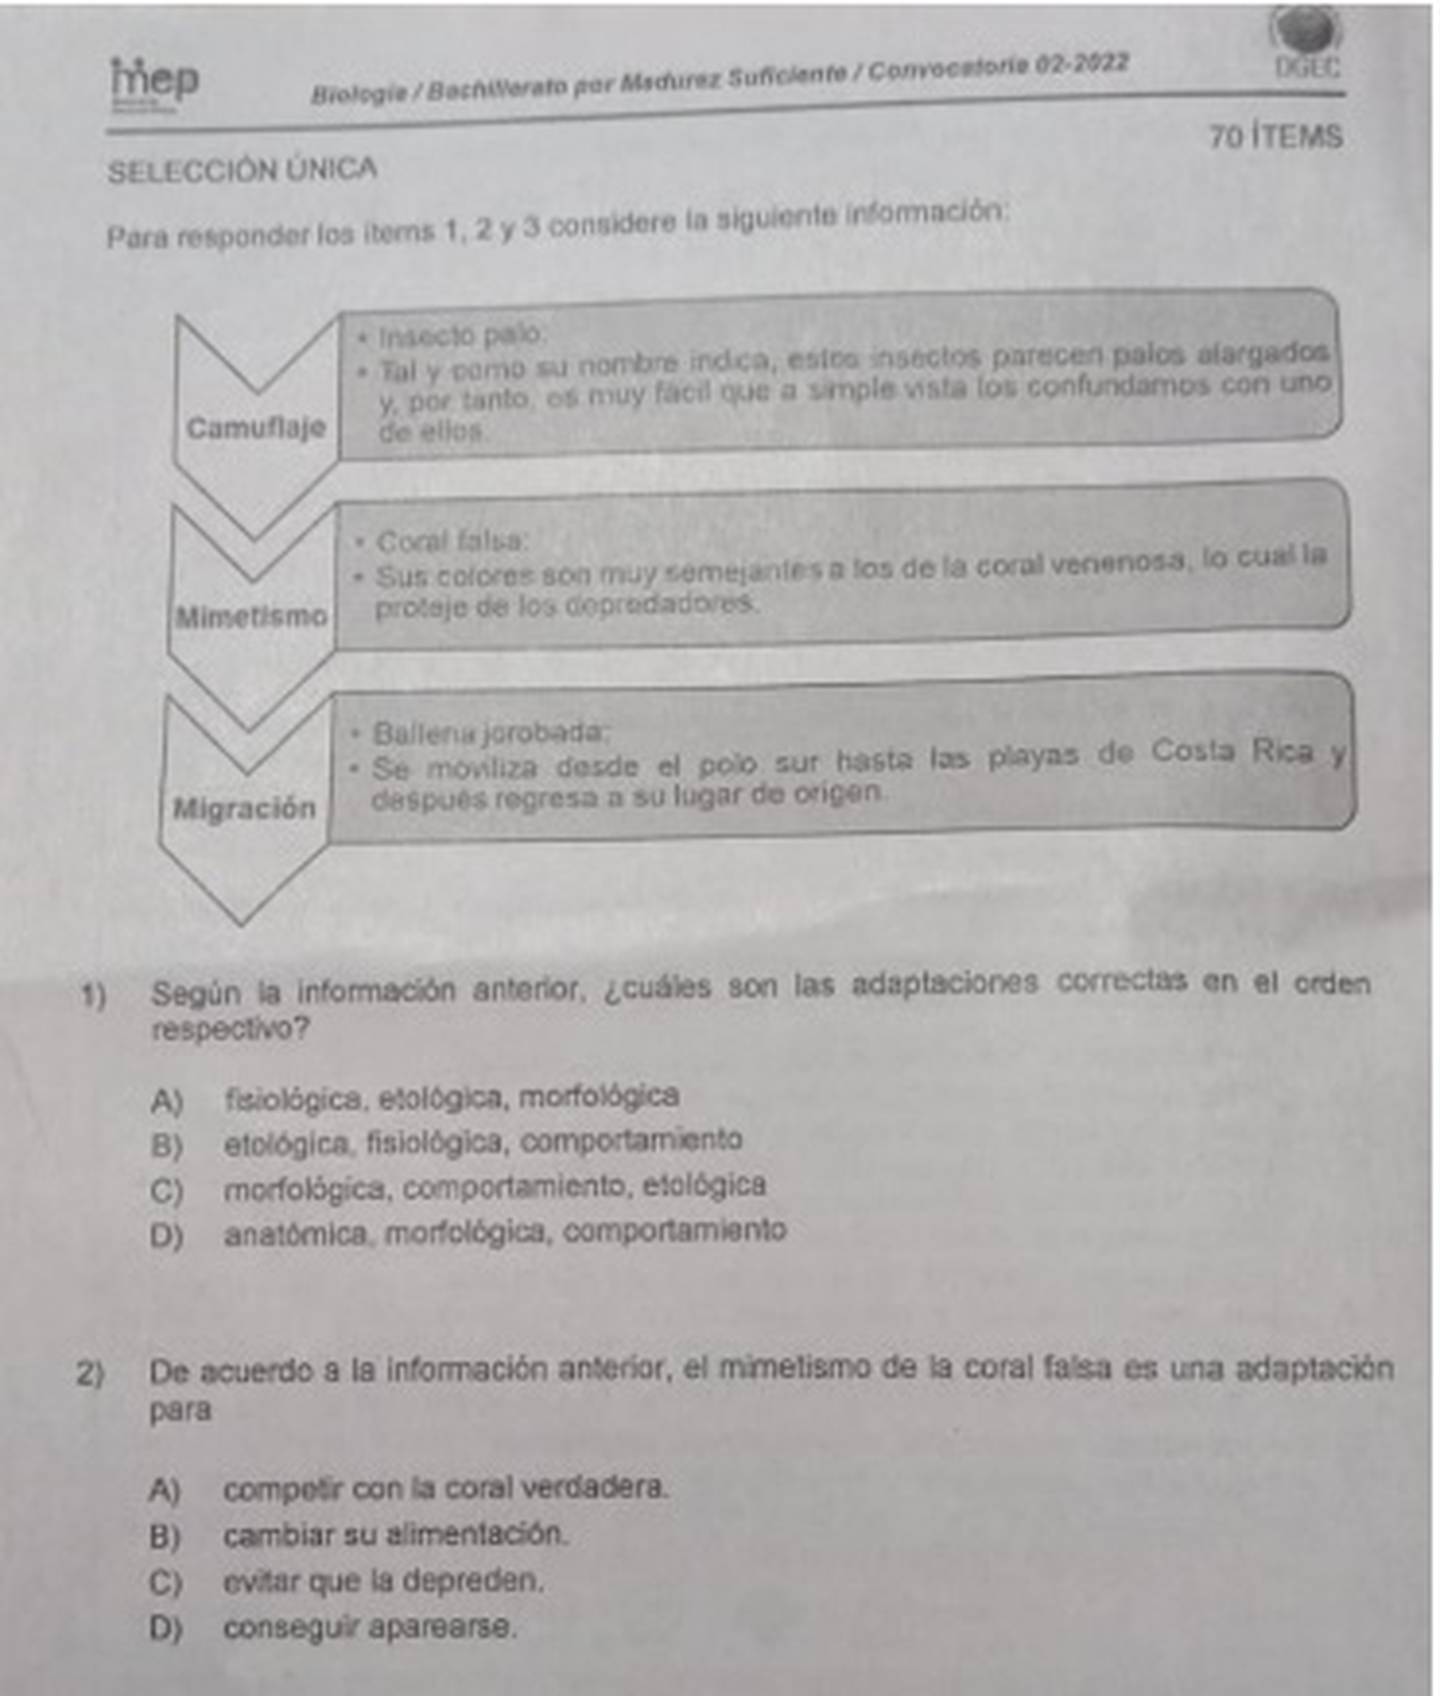 El ministerio de Educación Pública (MEP) tomó la decisión de suspender las pruebas de Bachillerato por Madurez que se iban a realizar este sábado 17 y domingo 18 de setiembre por una denuncia que informó de la venta en redes sociales de los exámenes hasta por ₵70 mil